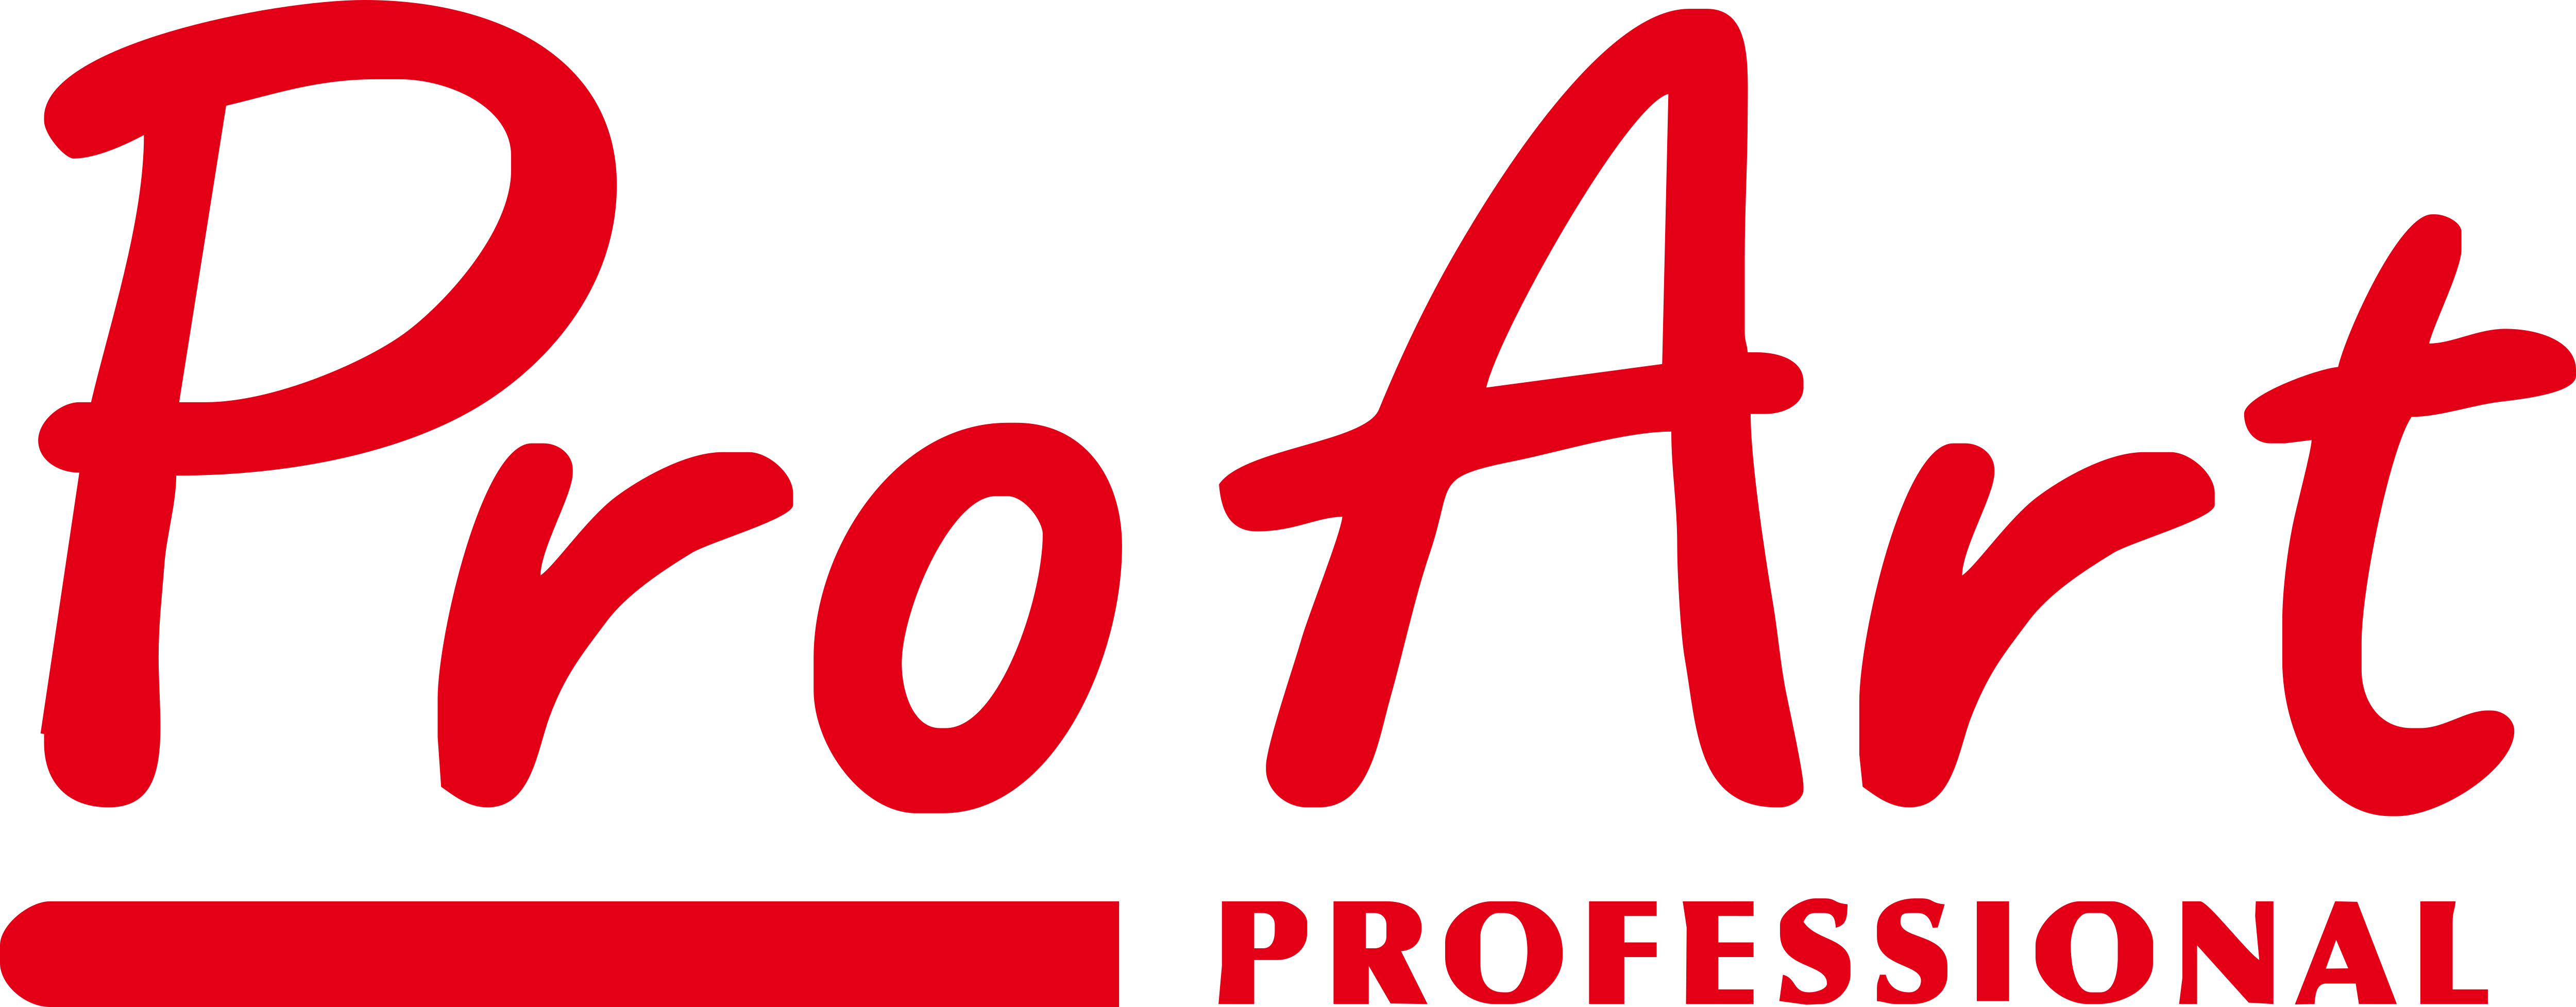 Pro Art – Logos Download